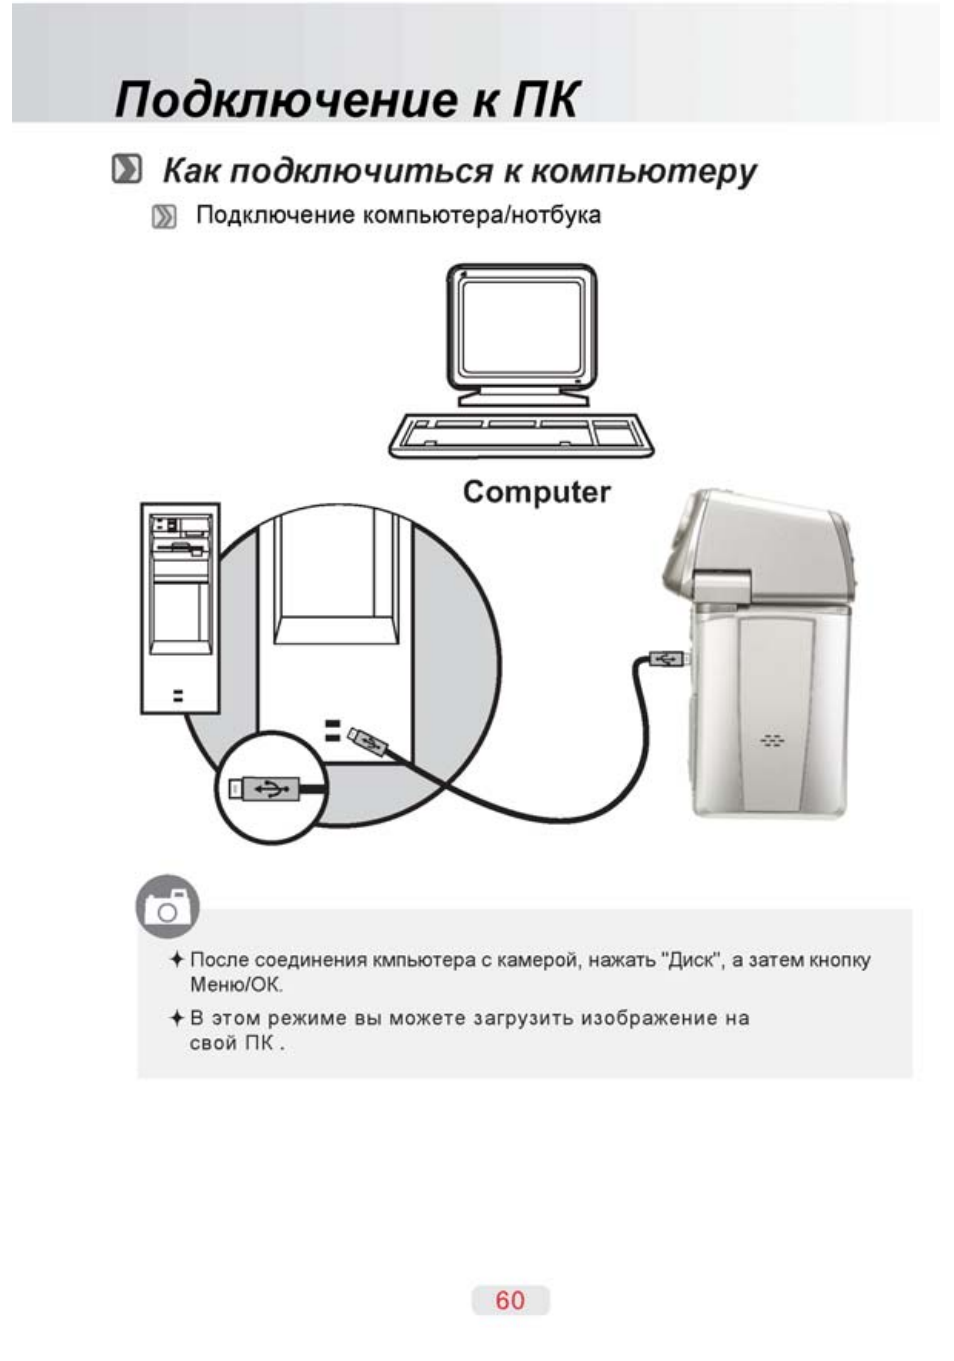 Порядок сборки компьютера: по пунктам и самостоятельно